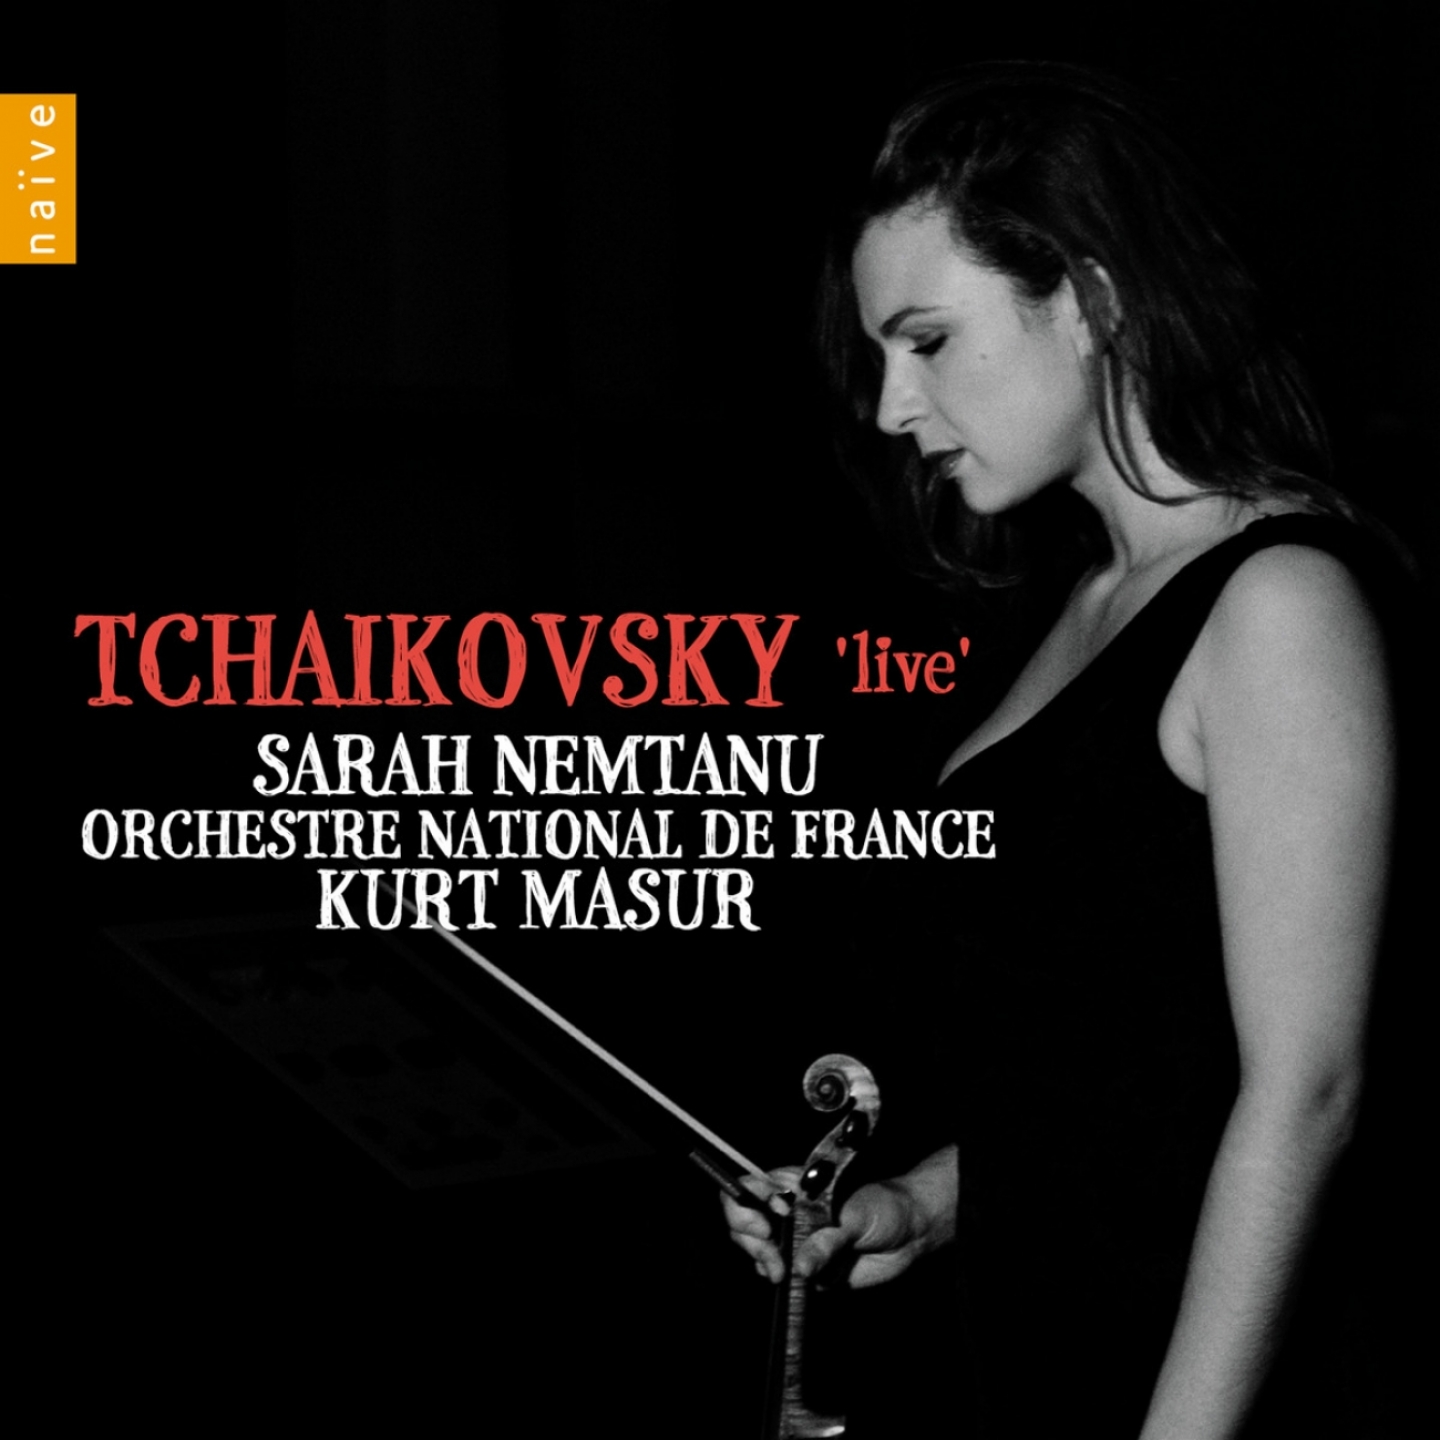 Tcha kovsky ' Live'